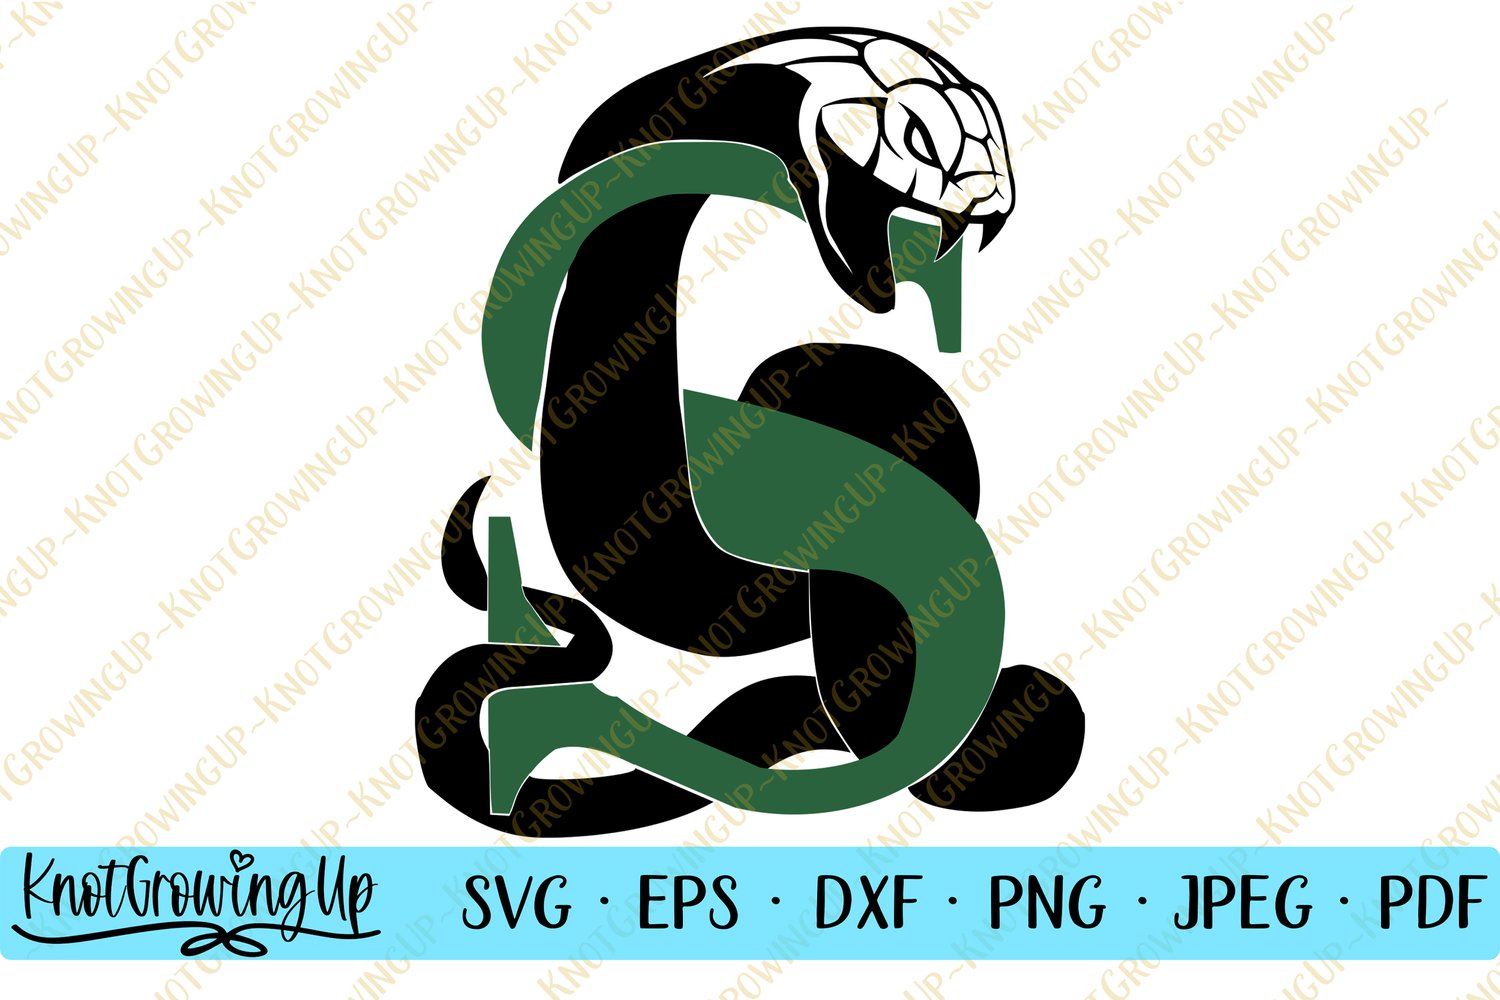 Slytherin Hogwarts House 2 SVG — KnotGrowingUp Designs